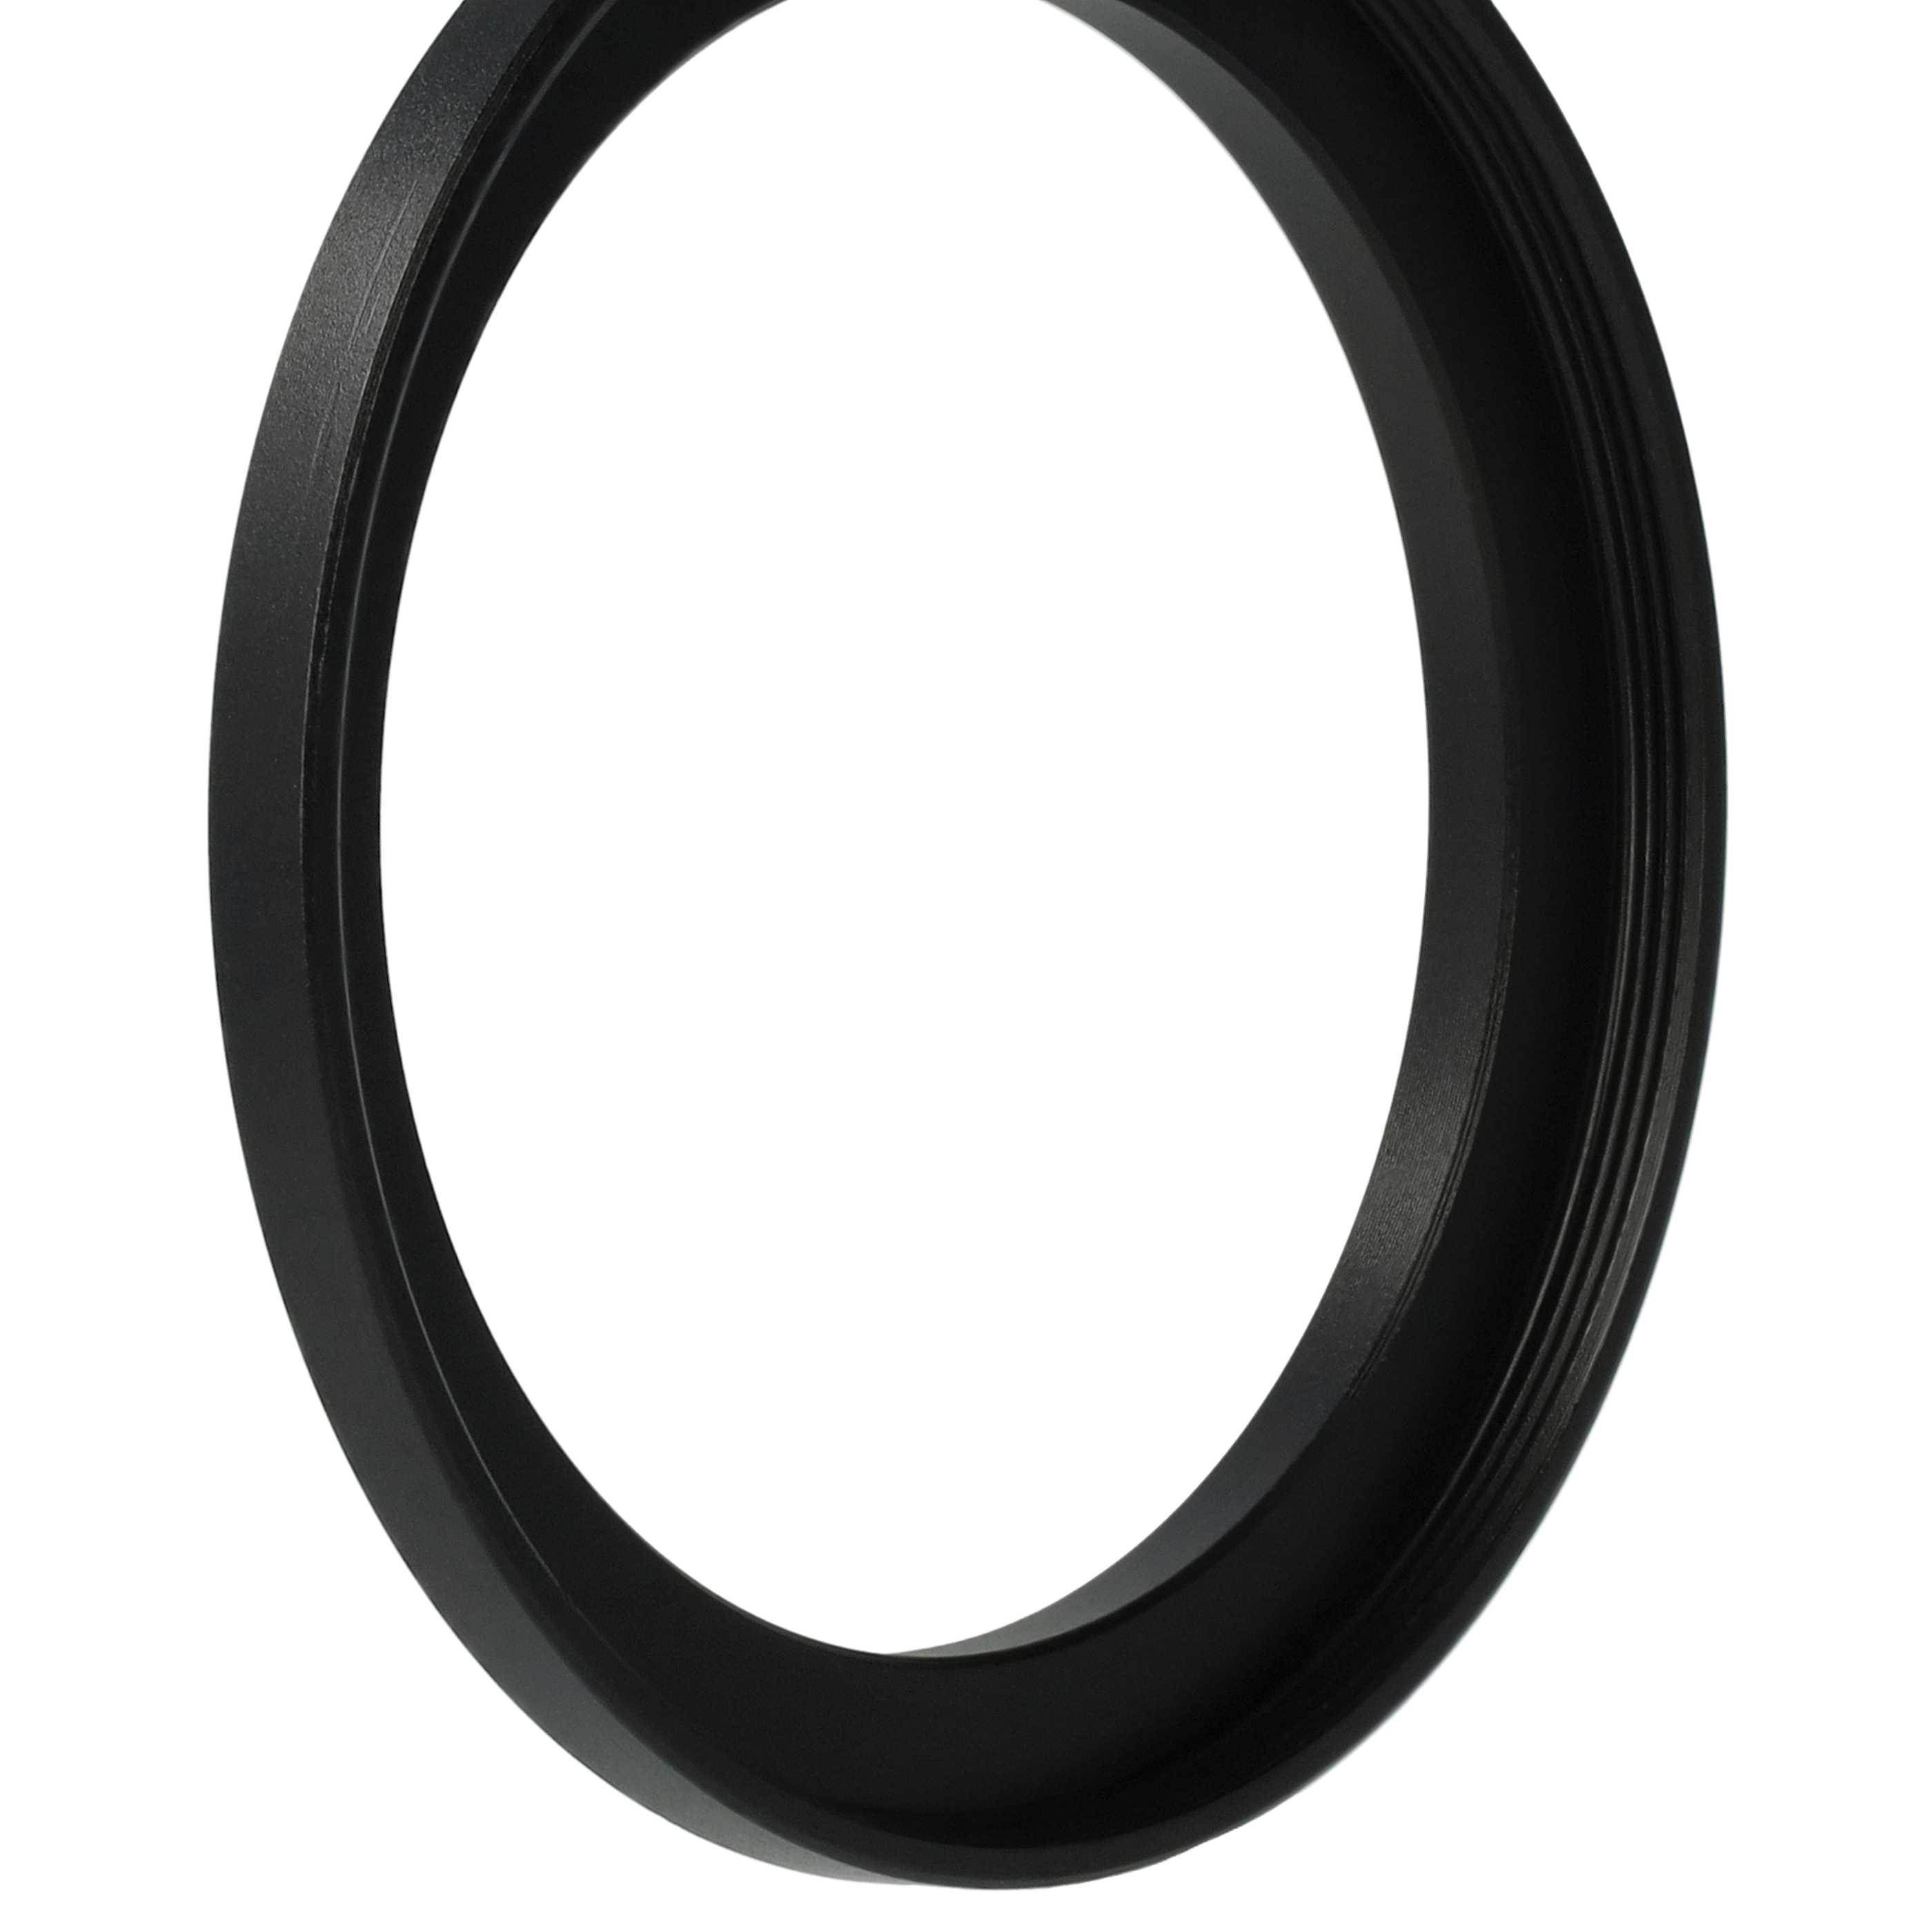 Step-Up-Ring Adapter 48 mm auf 55 mm passend für diverse Kamera-Objektive - Filteradapter